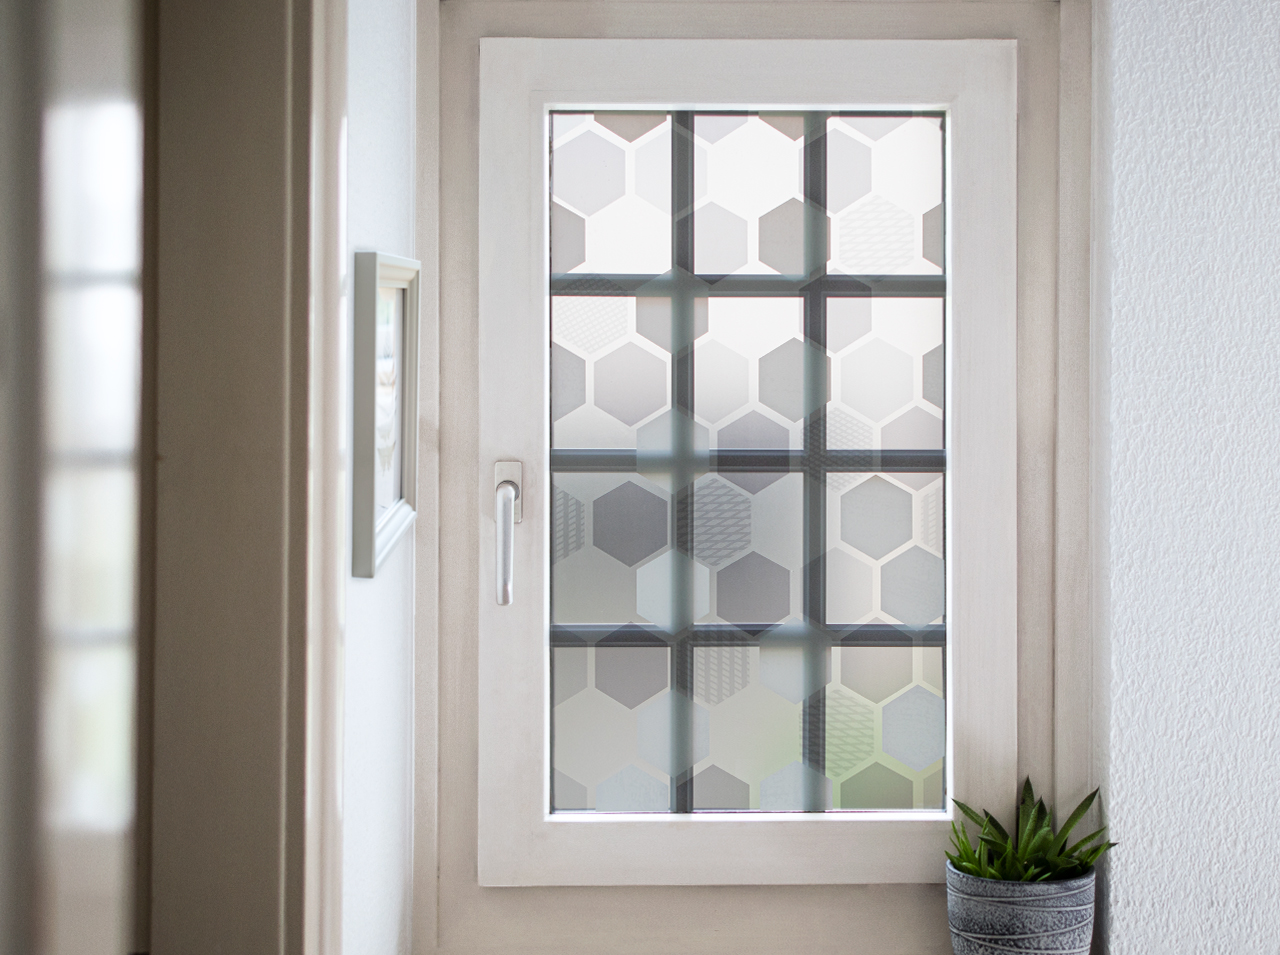 Finestra rivestita con una pellicola opaca per finestre a nido d'ape in bianco, grigio e menta.